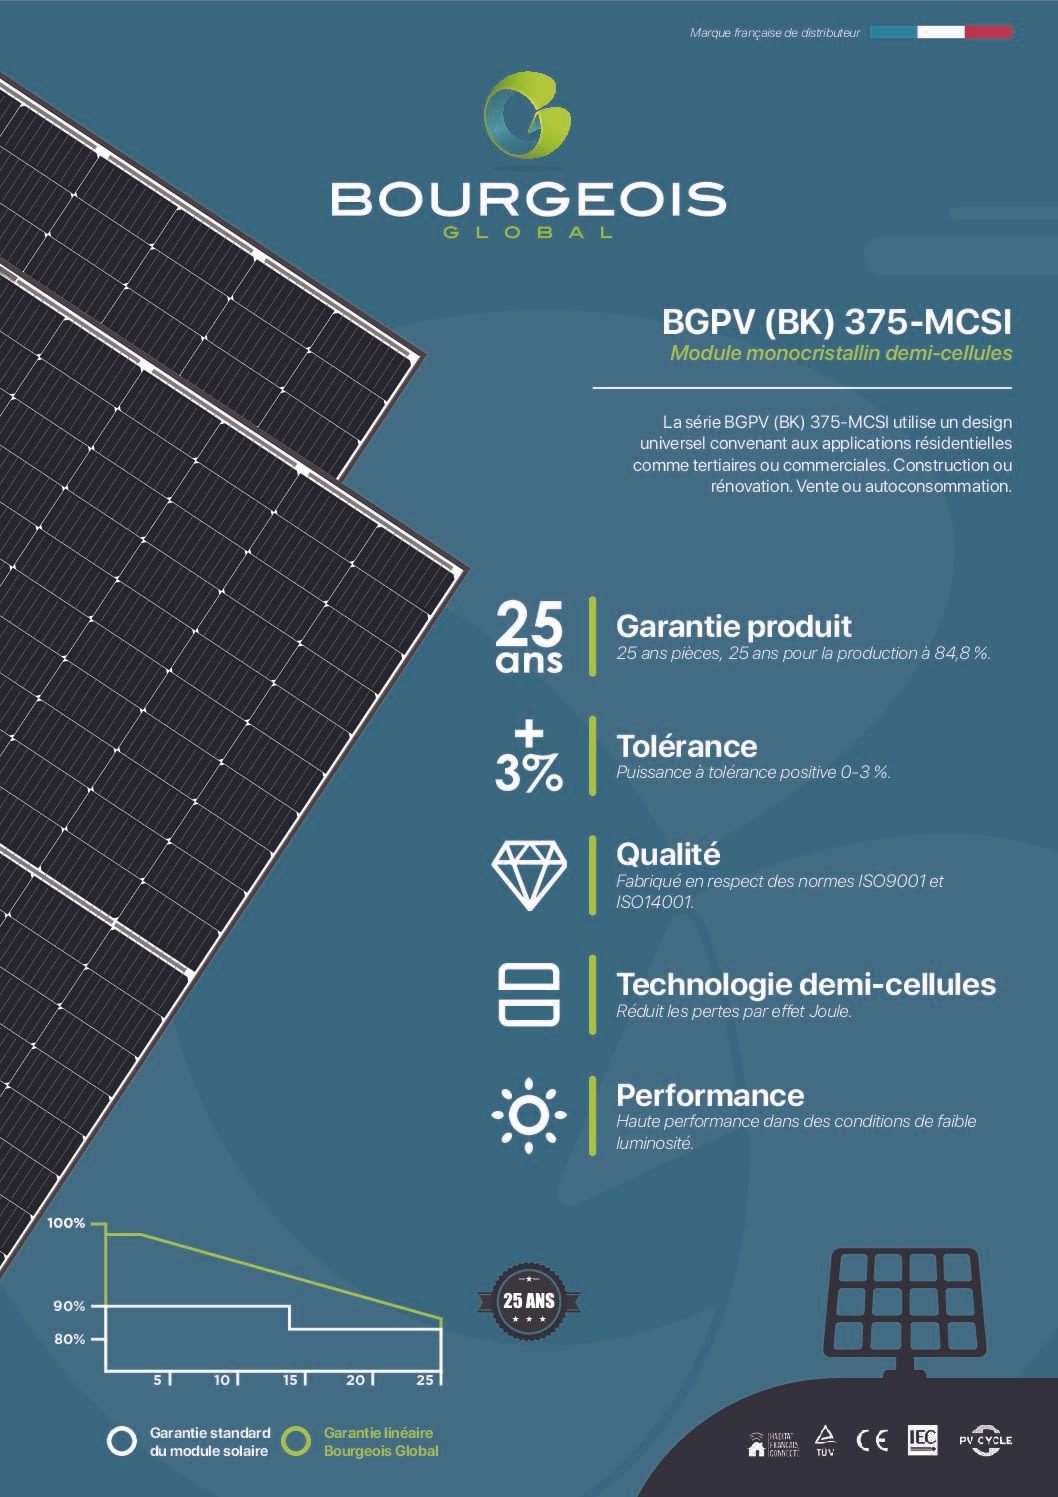 Guide : devenir Installateur panneaux solaires - Fhe France